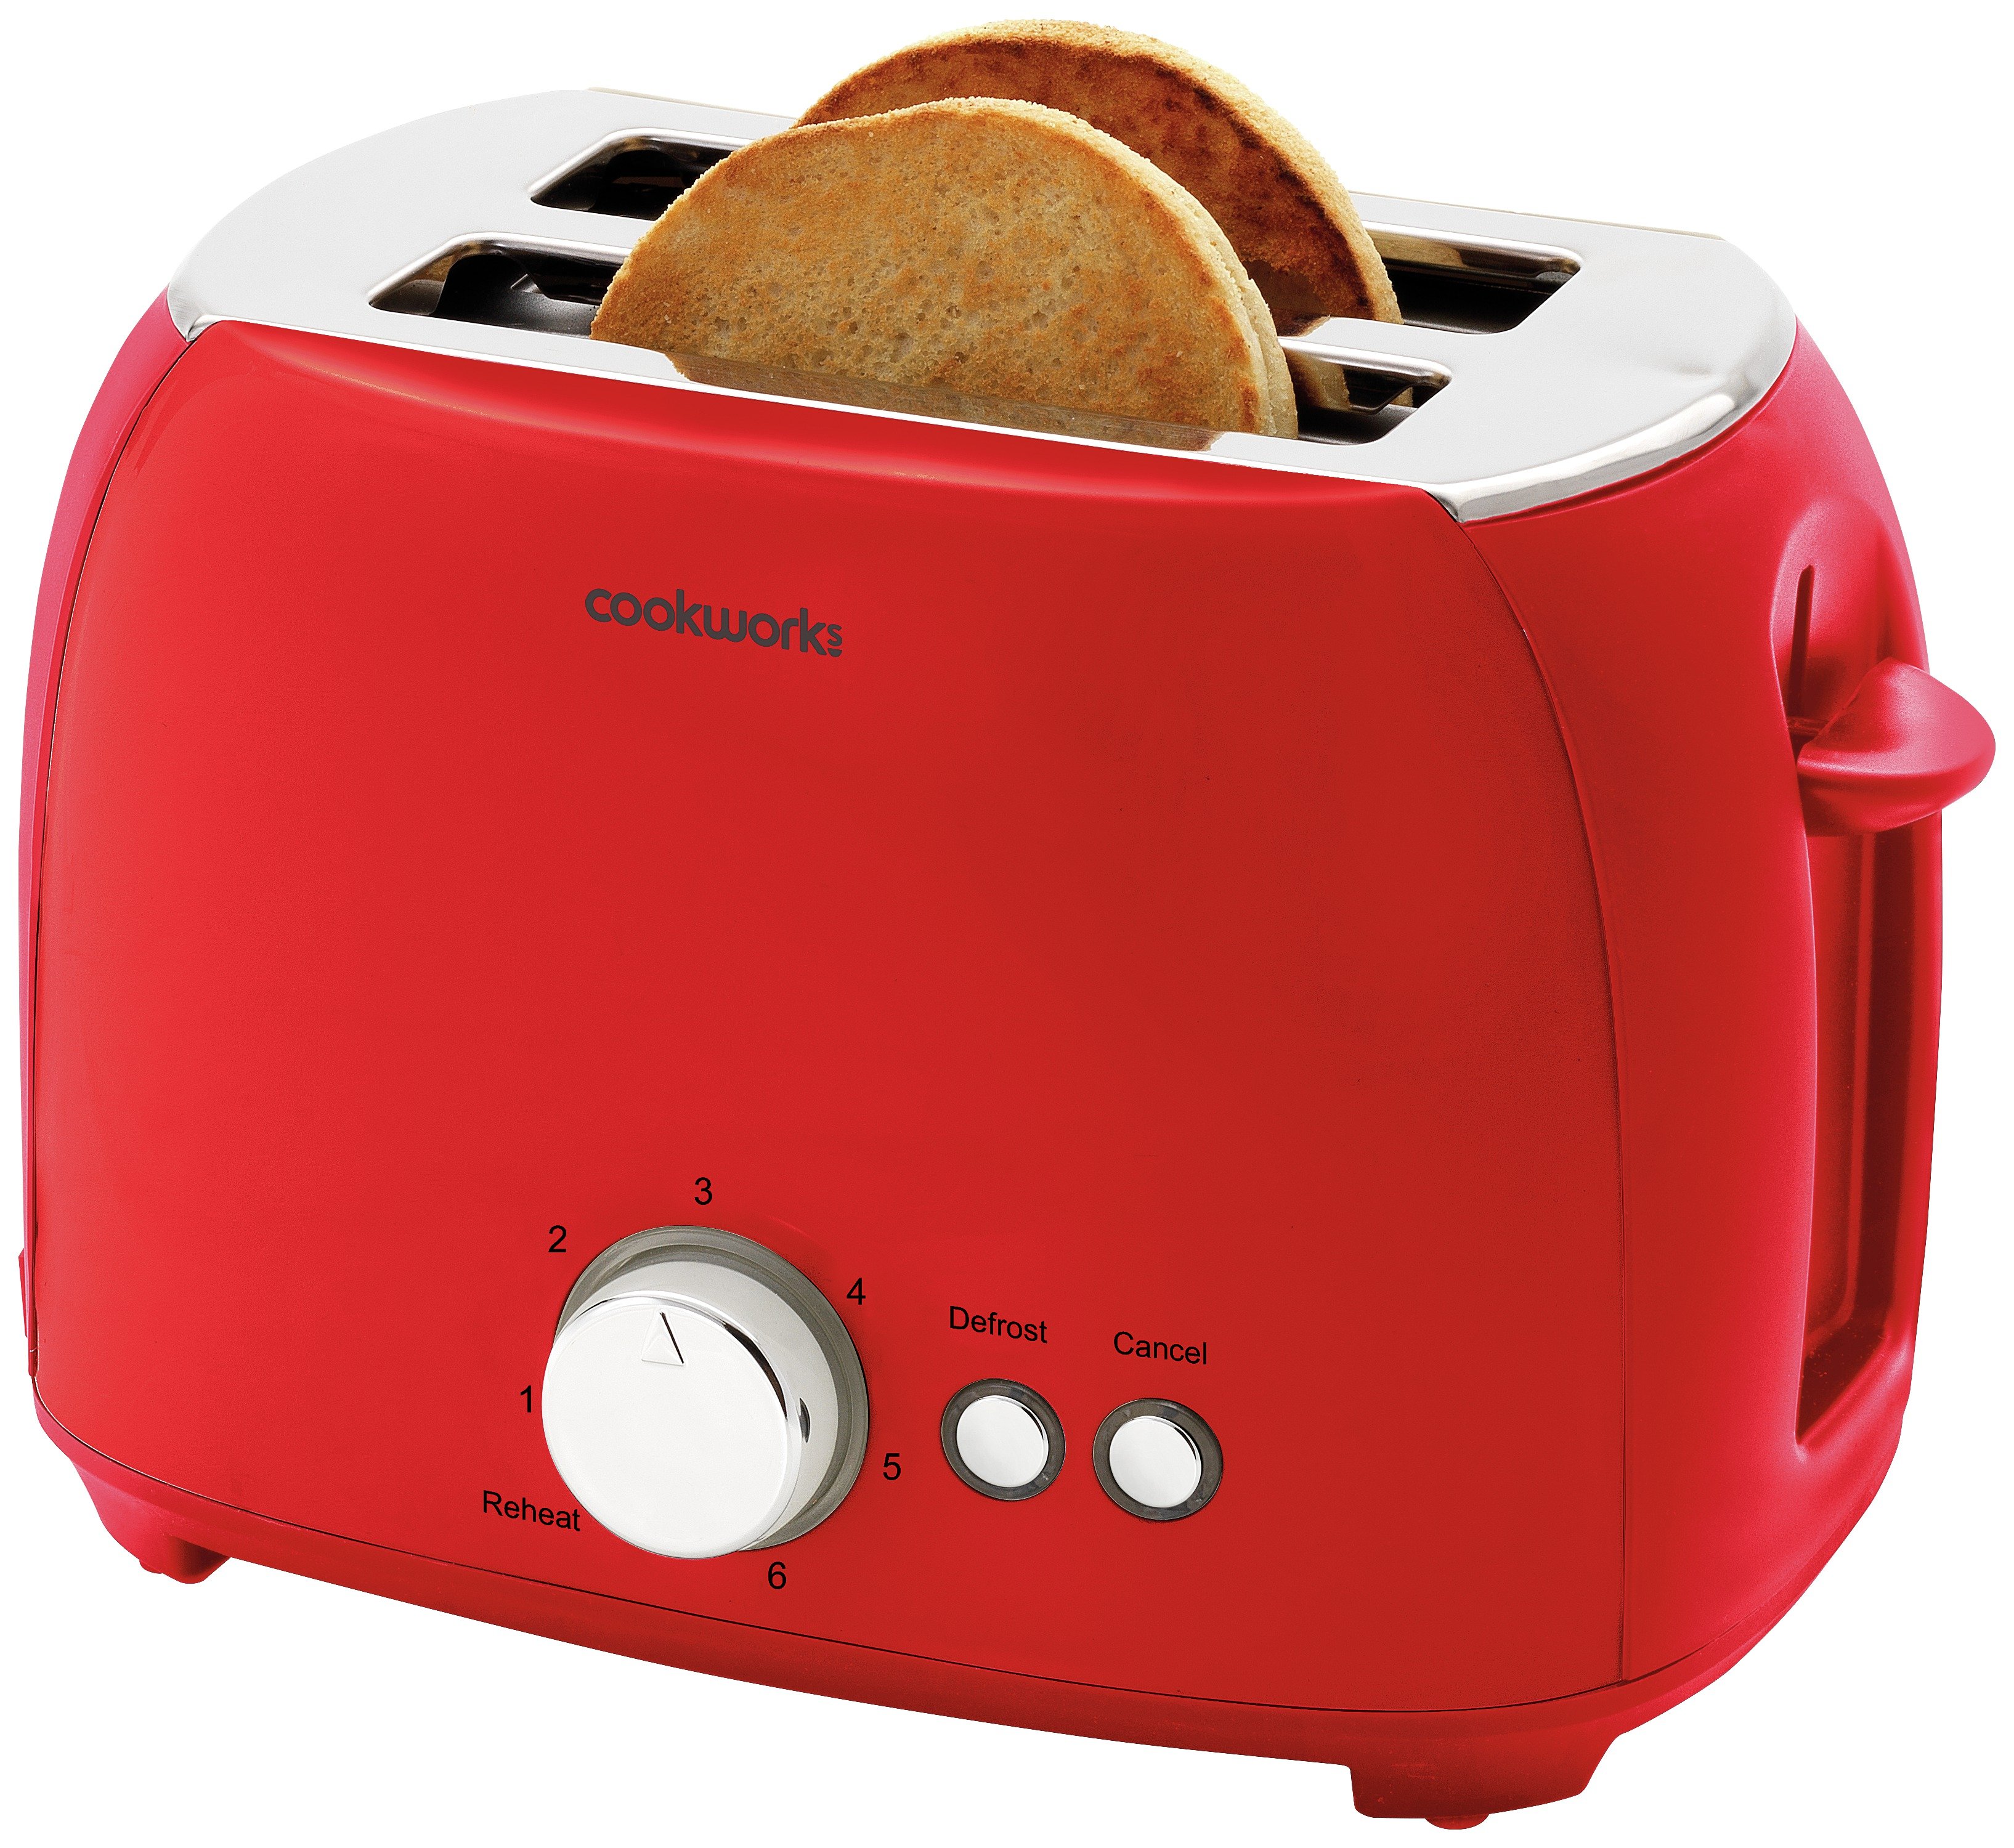 'Cookworks 2 Slice Toaster - Red